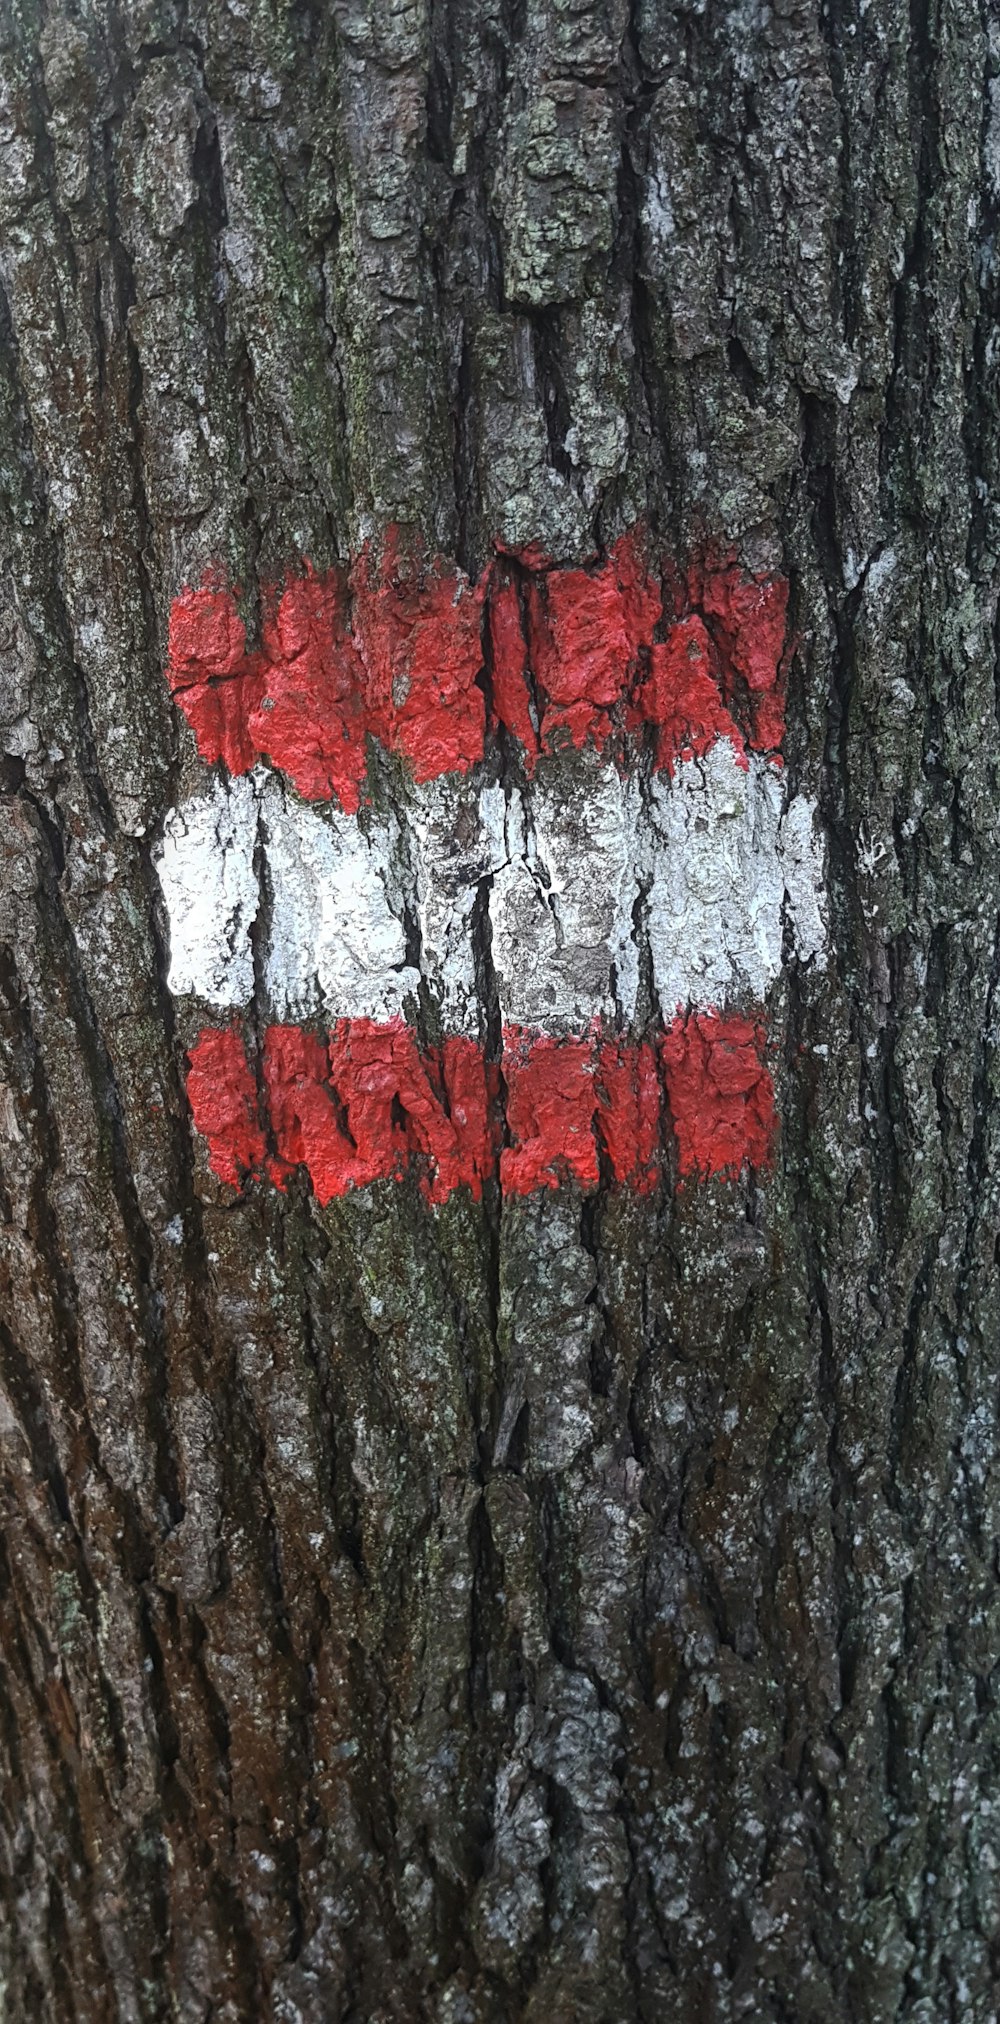 나무 껍질에 빨간색과 흰색 줄무늬가 있습니다.